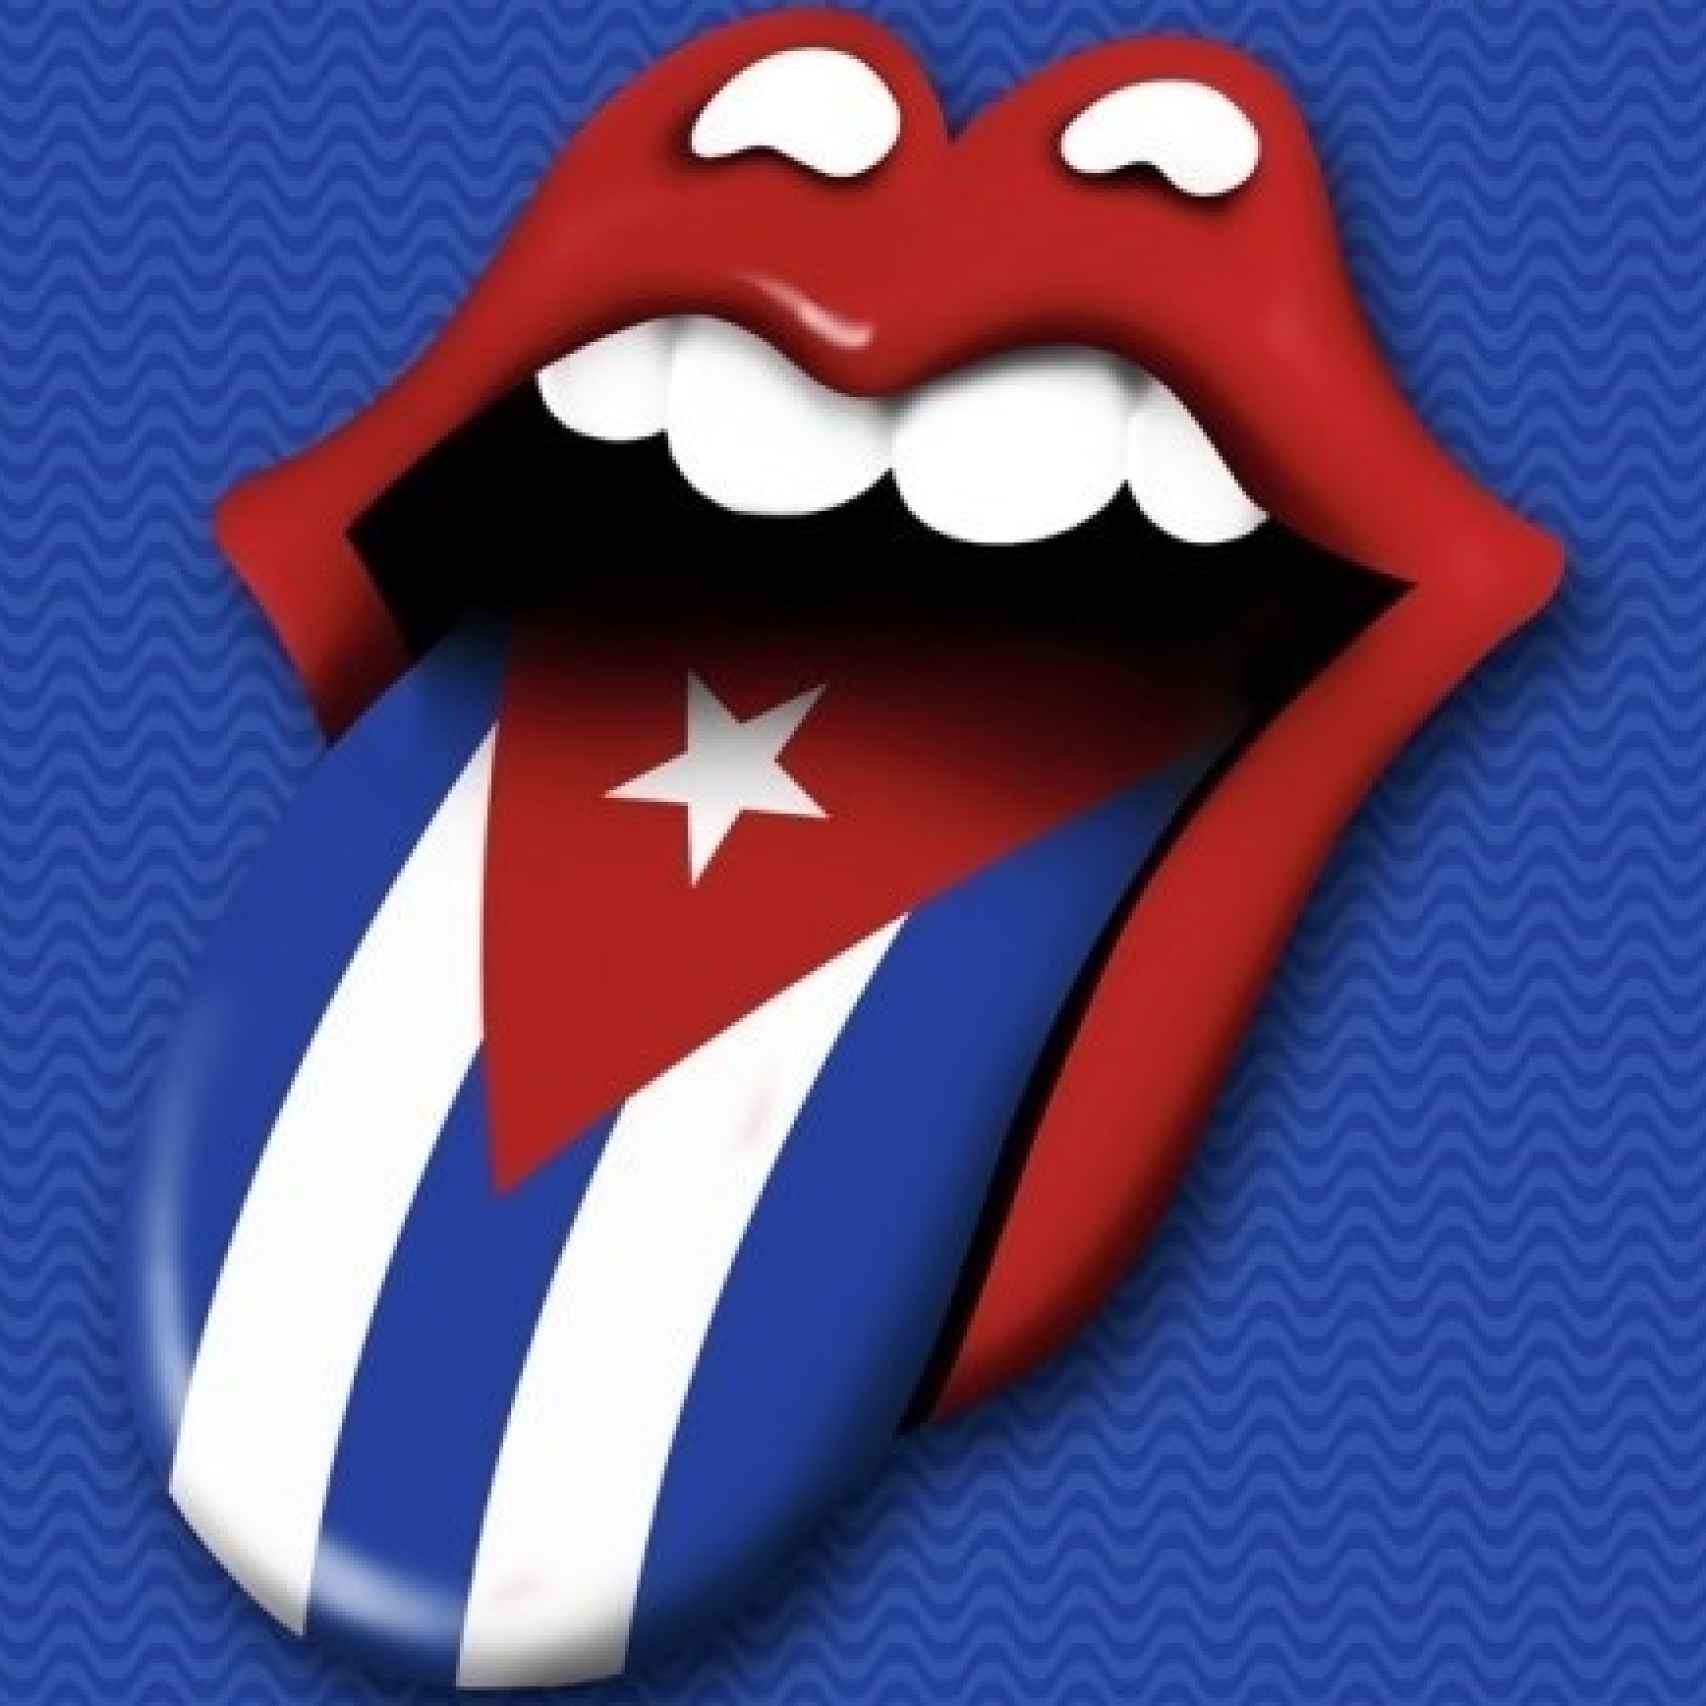 Cartel de la gira de los Rolling Stones en Cuba.